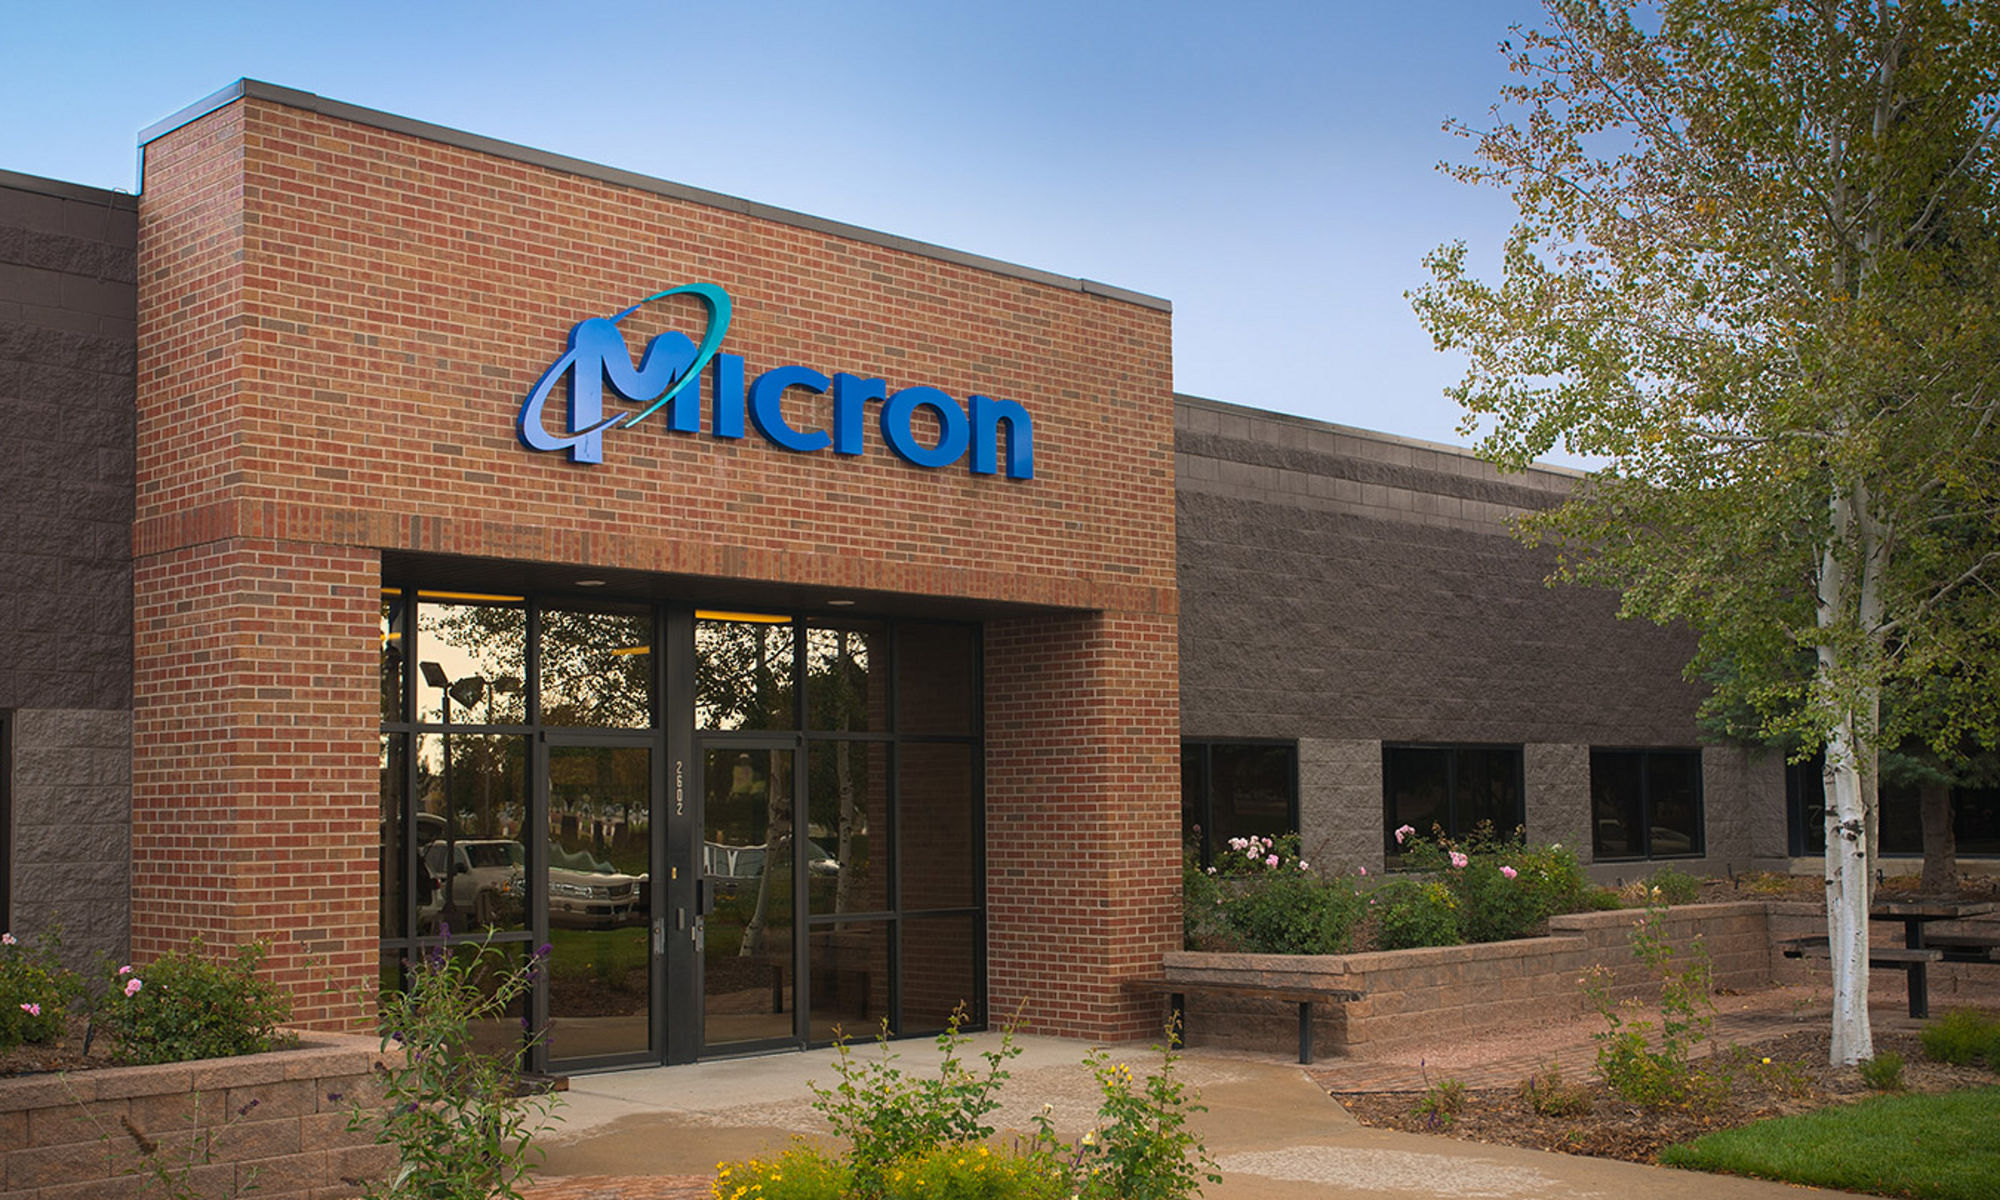 Micron building in Longmont, Colorado